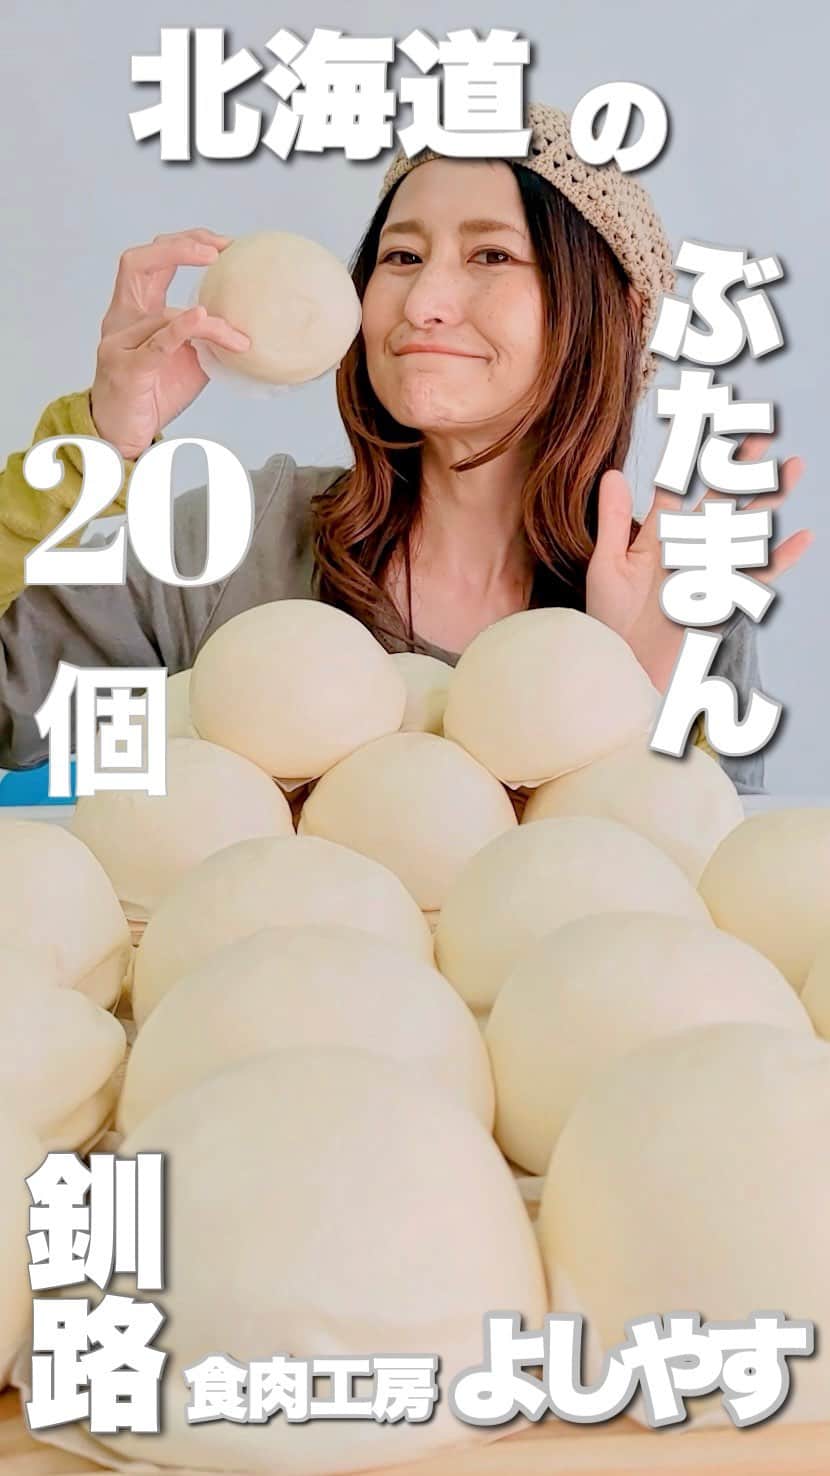 アンジェラ佐藤のインスタグラム：「よしやすのぶたまん20個大食い (吃很多北海道的豬肉包吧)  (」ﾟДﾟ)」今回のお店ーーーーーーーーーっ！📖´- 釧路にある食肉工房よしやすさん！ @yoshiyasu_kushiro  (」ﾟДﾟ)」今回の爆食メニューーーーーーーーーーっ！ よしやすの大人気商品‘’よしやすのぶたまん”20個！  食肉工房という名の如く、お肉屋が作る具沢山のぶたまん！ずっしり重くてなまらデカいんすよ✨✨ 皮はもっちもちで、肉はジューシー🍖 ひき肉の粒がおおきくてたっぷり入ってるもんだから、食べたらこぼれ落ちそうになる(笑)  (꒪Д꒪) ﾉ北海道産にこだわり 北海道産小麦、北海道産豚肉、北海道産たまねぎ使用してマス🧅🐷 膨張剤を使用しないドライイーストによる自然発酵で作られているんですよ〜。こだわりを感じますなあ🥹✨  (꒪Д꒪) ﾉ 他にもザンタレまんや、チャーシューぶたまん、チョコまん等色んな種類の肉まんが豊富♪ よしやすさん通販もやってまして、肉まん以外の商品も色々あるんですよ〜🖥  (」ﾟДﾟ)」皆さんぜひよしやすの美味しいぶたまん食べてみてくださいねーーーー！！！  (※Google翻訳で台湾語に翻訳してます！最期の1口というセリフ間違えて表記しました💦申し訳ありません💧)  ※ここ重要！テストに出ます！＼_( ﾟﾛﾟ) ［Instagram年内フォロワー数20万を目指して頑張ってます‼️過去投稿➔@angela_satou いいね、フォロー、保存！なにとぞよろしくお願いいたしまーーーーーす！🙇🏻‍♀️(←利根川土下座)］  #食肉工房よしやす #北海道肉まん #北海道豚まん #豚まん大食い #肉まん大食い #釧路グルメ #Hokkaido #北海道 #北海道グルメ #よしやす #モッパン #먹방 #大胃王 #大食い王 #大食い女王 #competitiveeater #一个猪 #대식까 #安吉拉佐藤 #安琪拉佐藤 #angela佐藤 #たくさん食べさせてくださりありがとうございます #夢は北海道と台灣の食の応援隊長になる事 #北海道好吃 #ヒンナヒンナ  【北海道釧路の食肉工房よしやすネットショップ】 https://www.yoshiyasu-shop.com/」